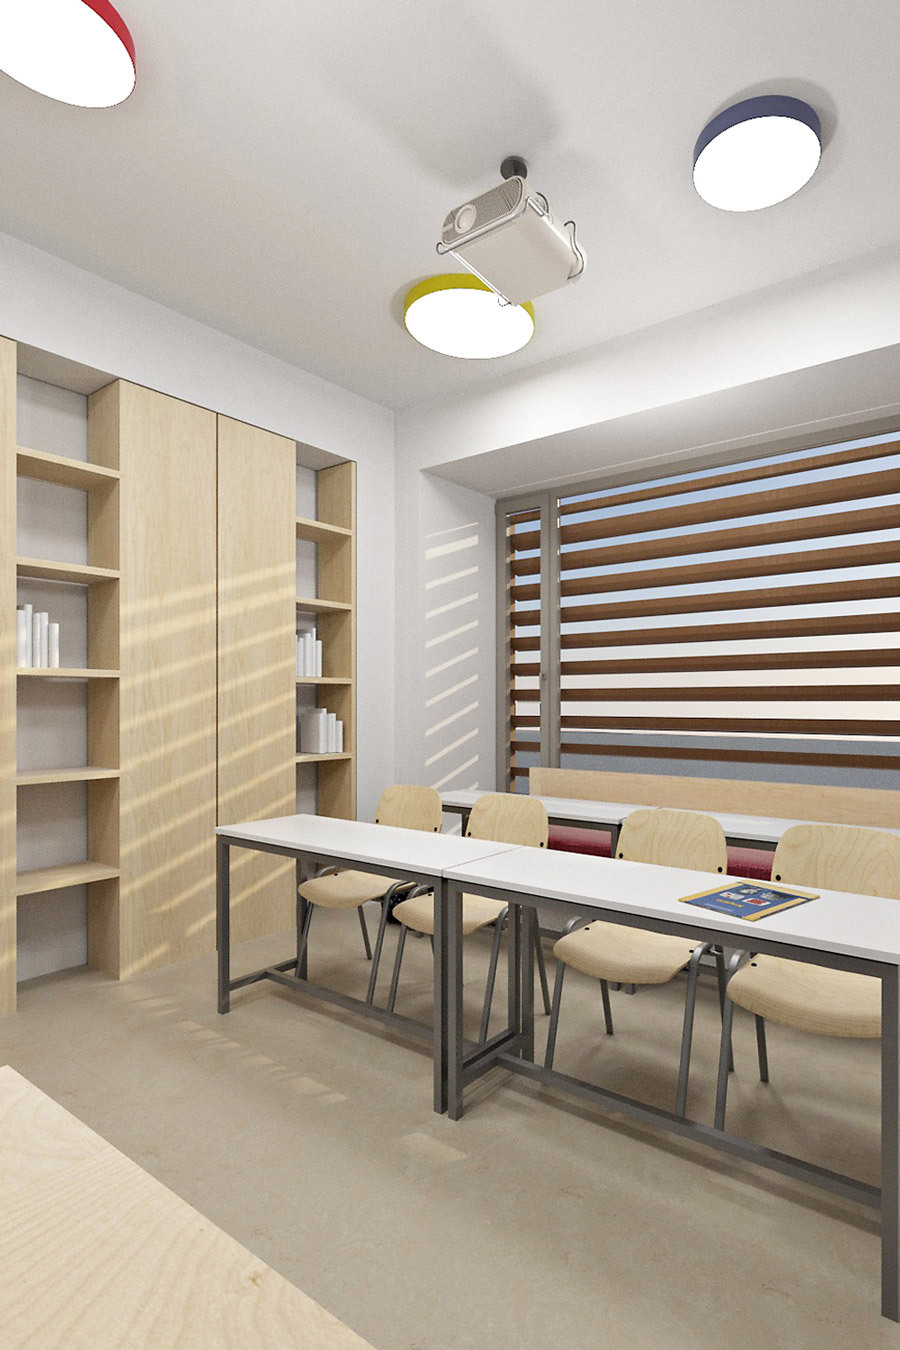 Classroom interior design of a tutorial institute in Nicosia -Cyprus.